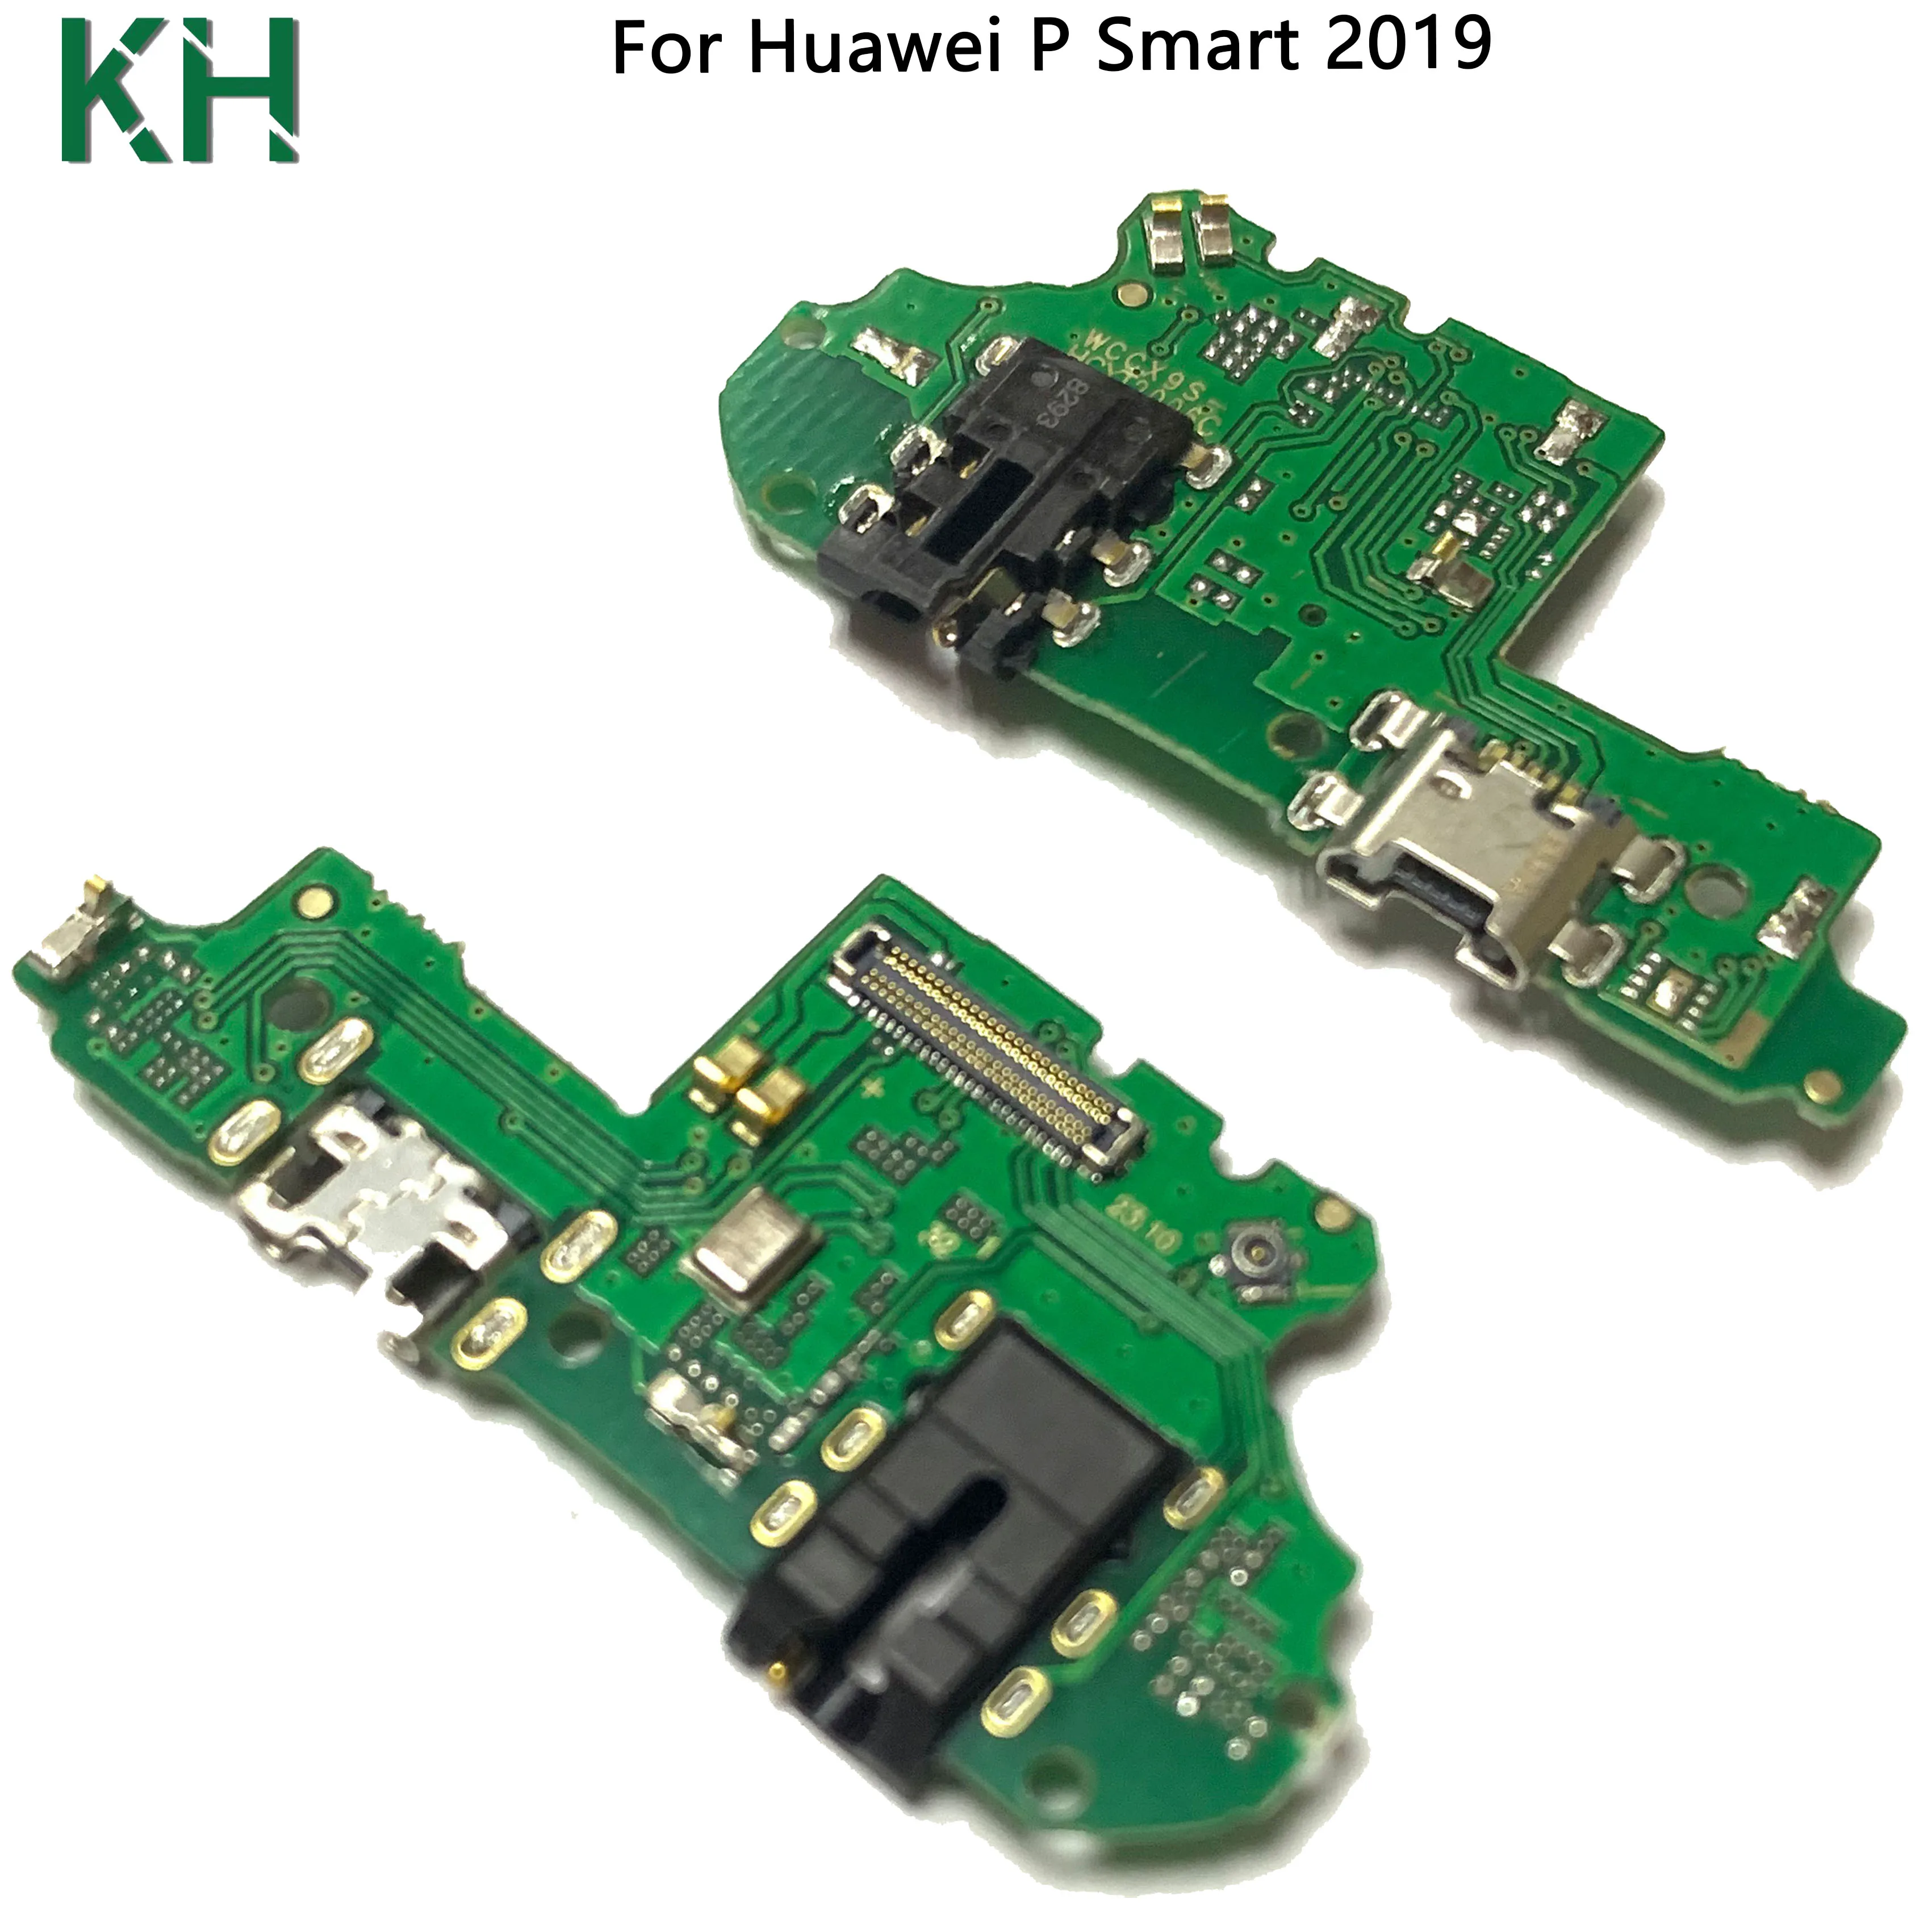 Разъем для подключения USB-порта для зарядки, детали платы, гибкий кабель для Huawei P Smart 2019